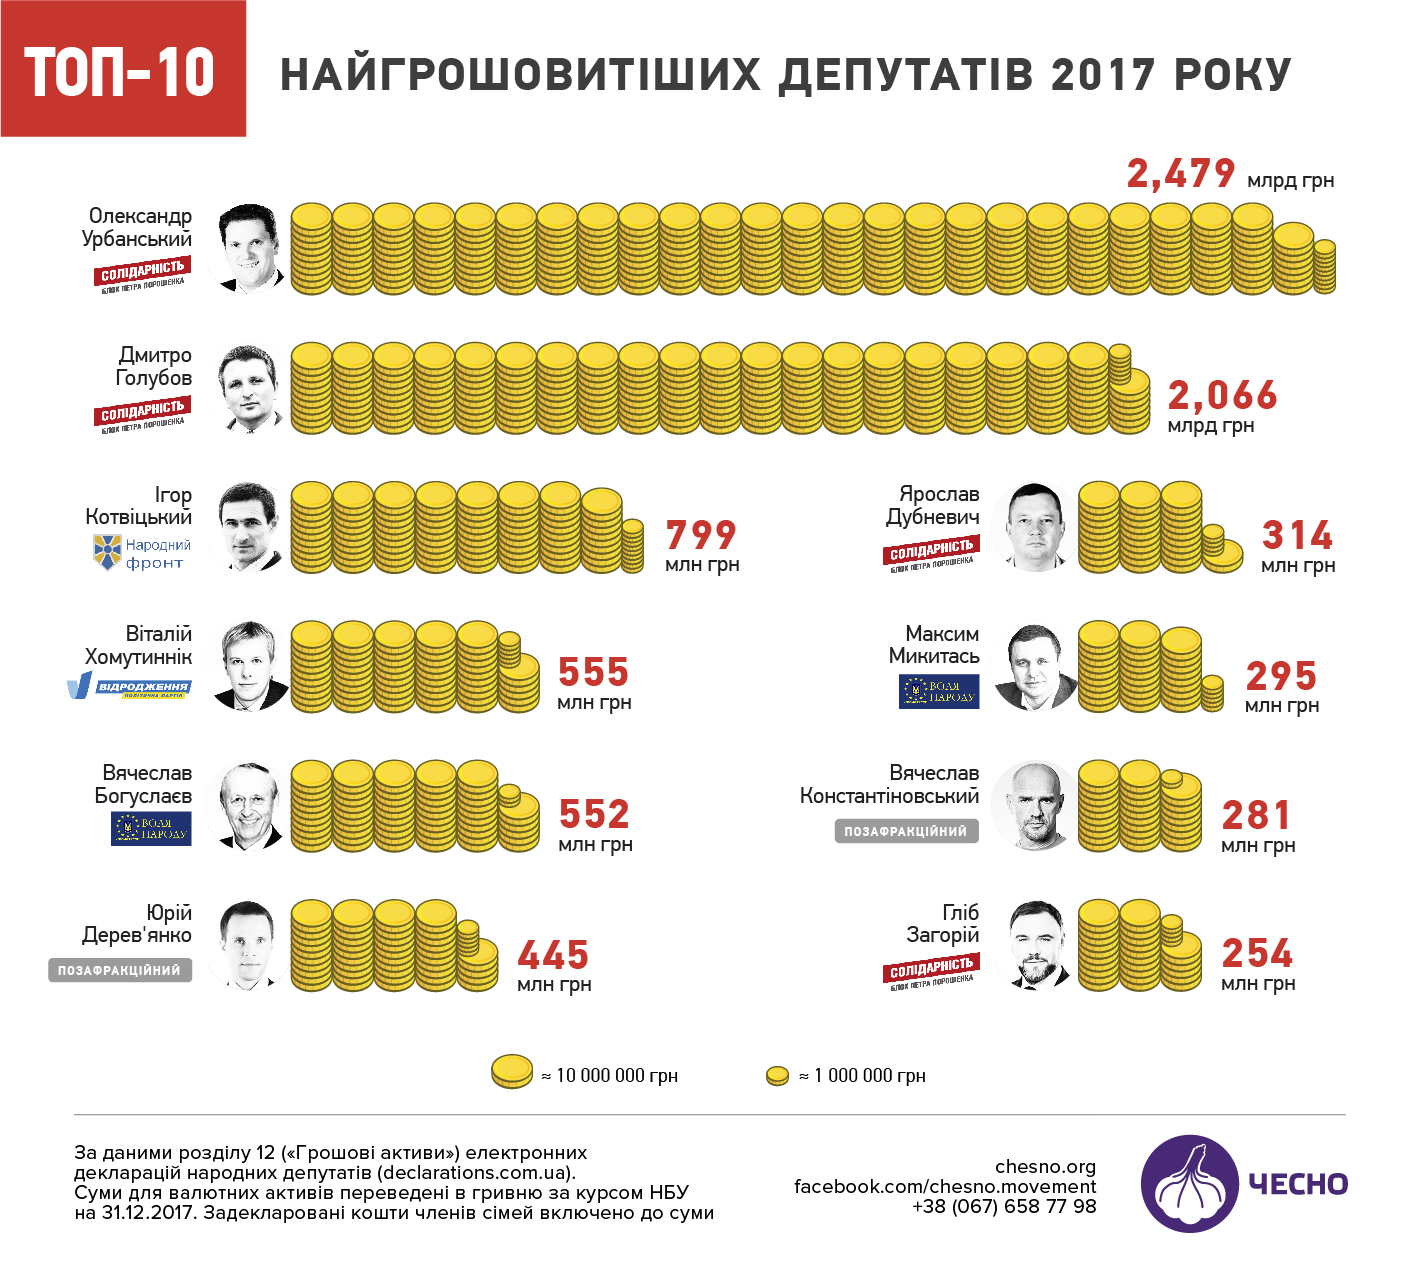 Найгрошовитіший депутат Верховної Ради за 2017-ий рік заробив майже 2,5 млрд грн, - журналістка